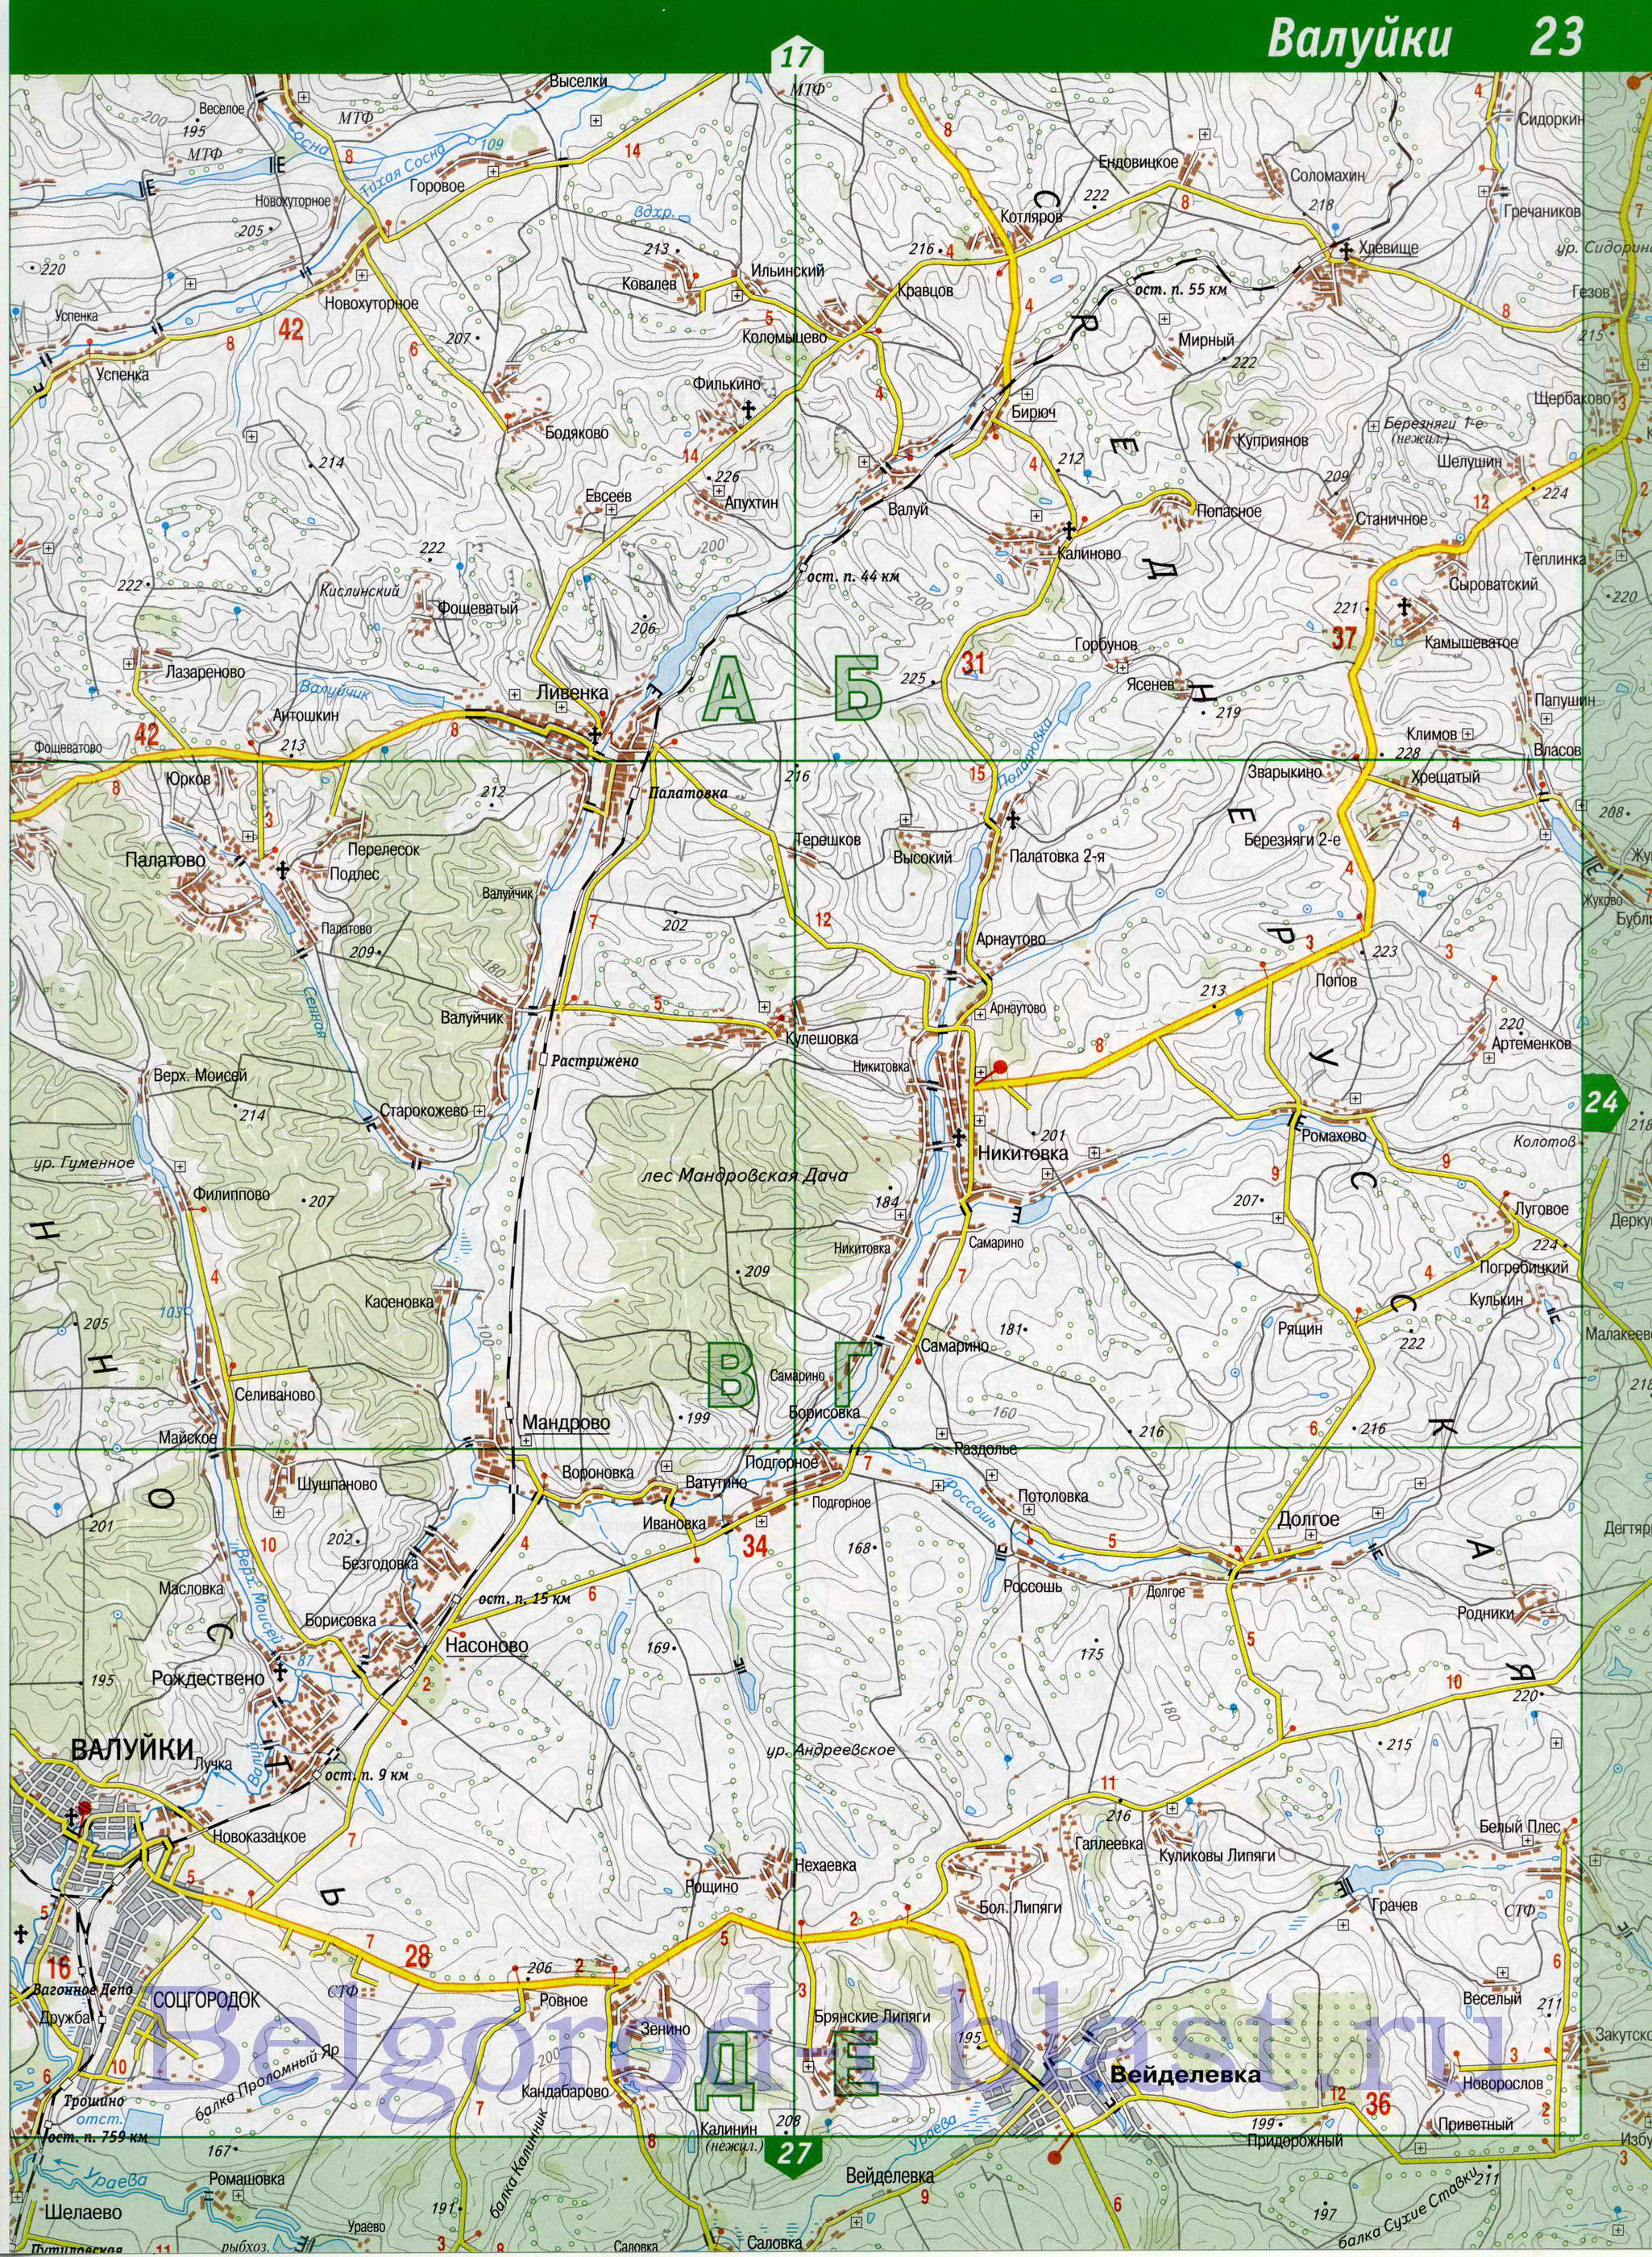 Карта Валуйского района Белгородской области. Подробная топографическая карта Белгородской обл - Валуйский район, B0 - 